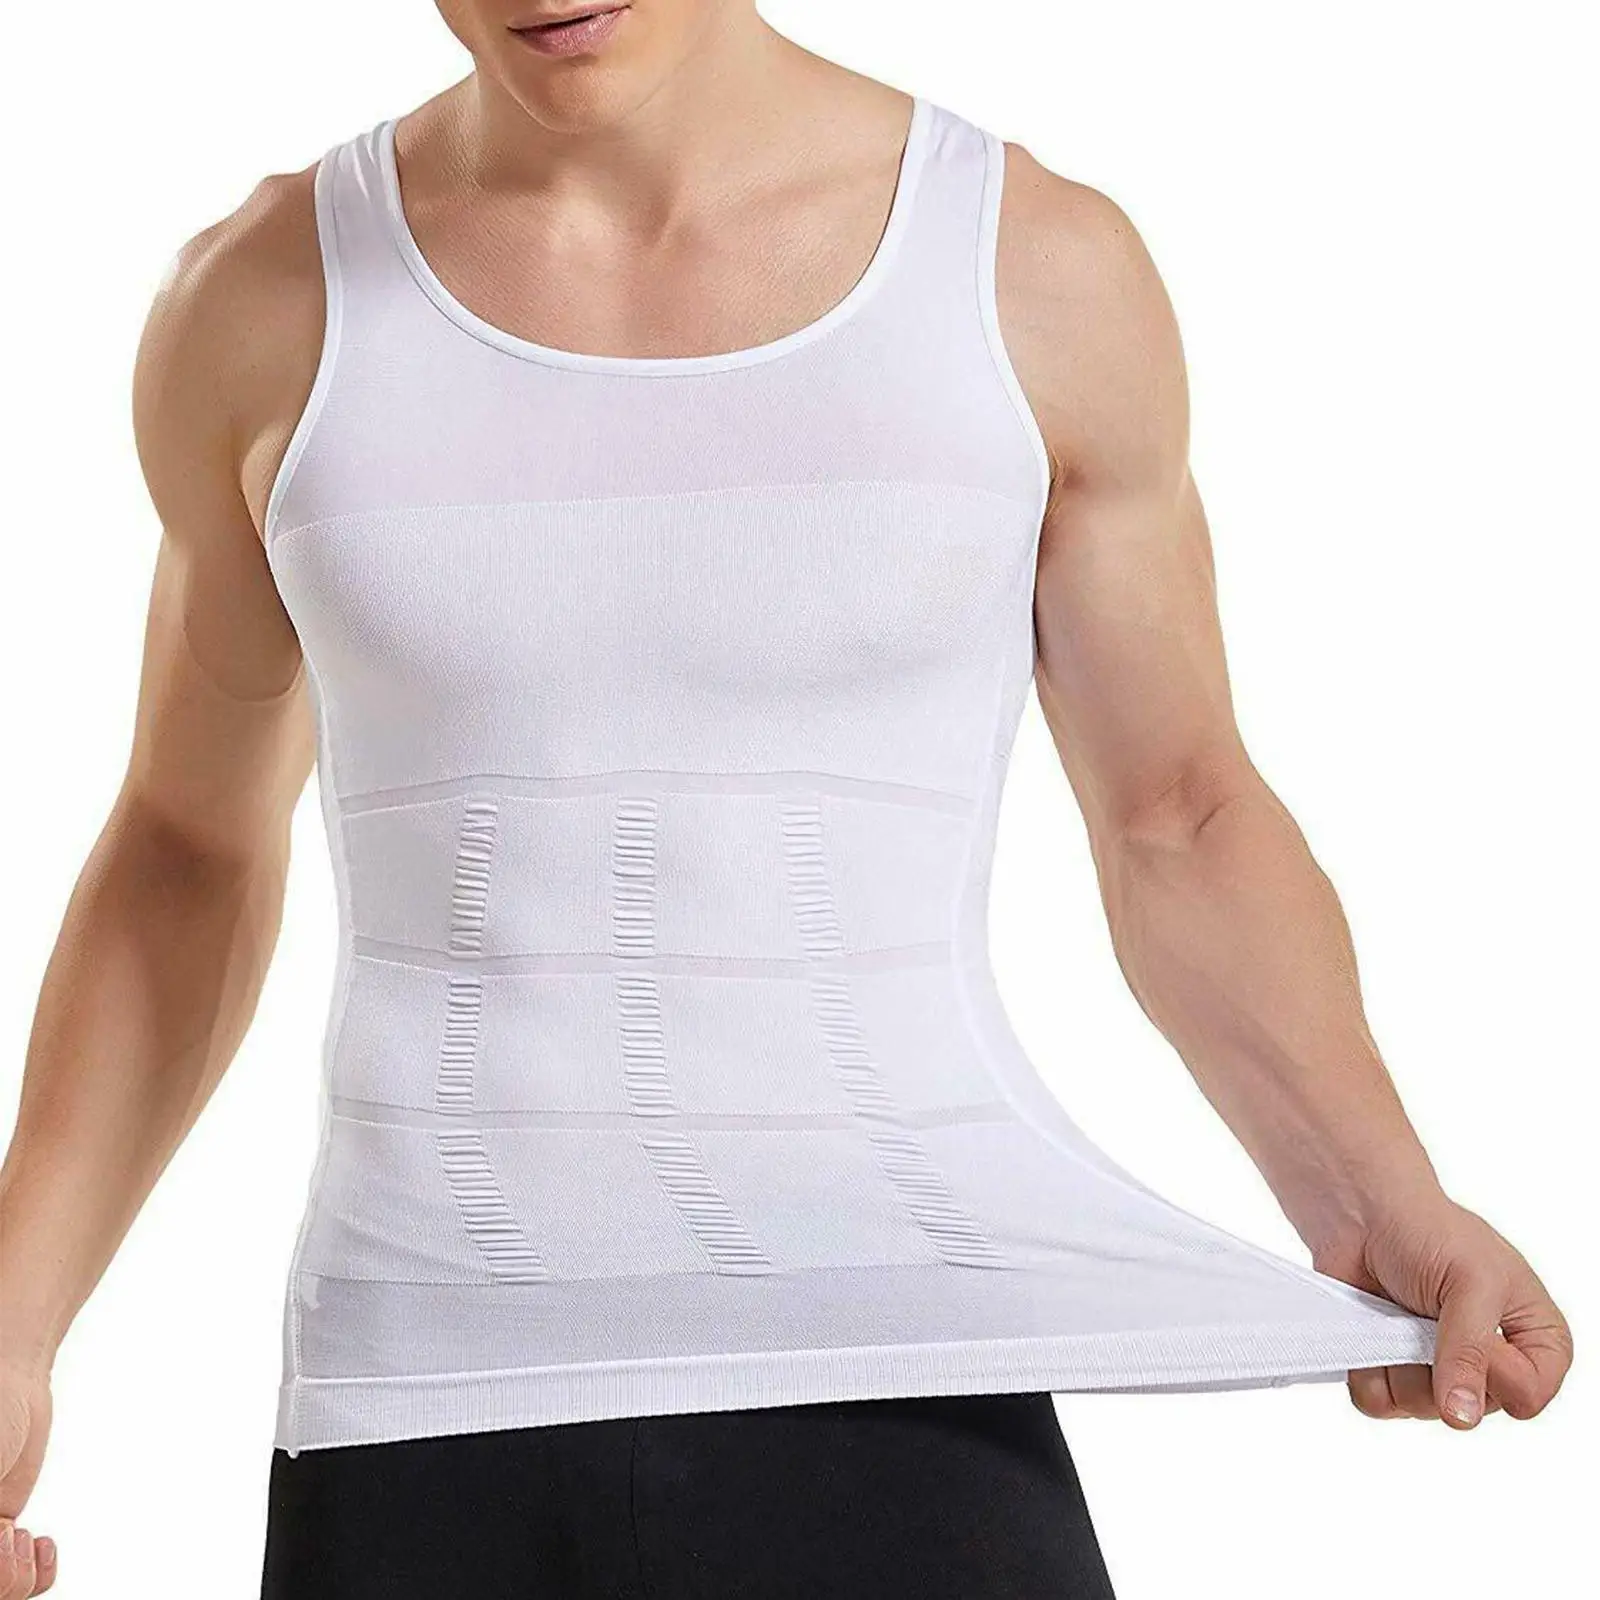 

Мужская рубашка для сжигания, мужской корсет, компрессионный уменьшающий для мужчин, обтягивающий мужской корсет для тела, нижнее белье для похудения, жира, живота